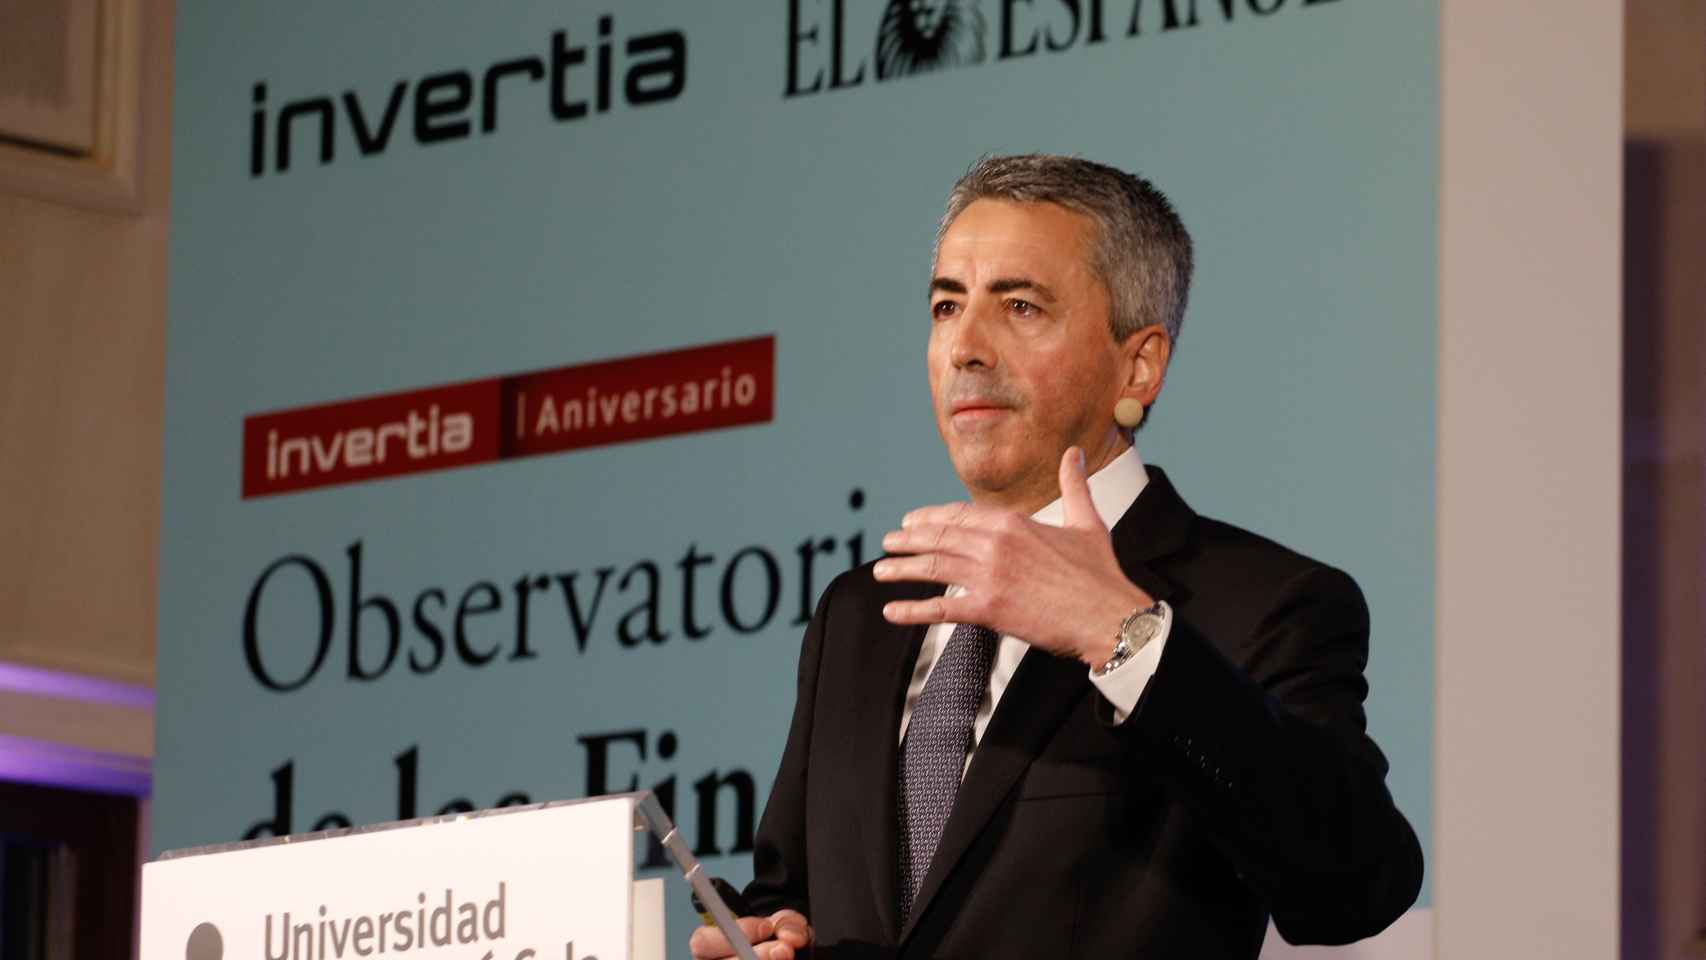 Sergio Álvarez Camiña,  director general de Seguros y Fondos de Pensiones, durante su intervención en el Observatorio de las Finanzas.